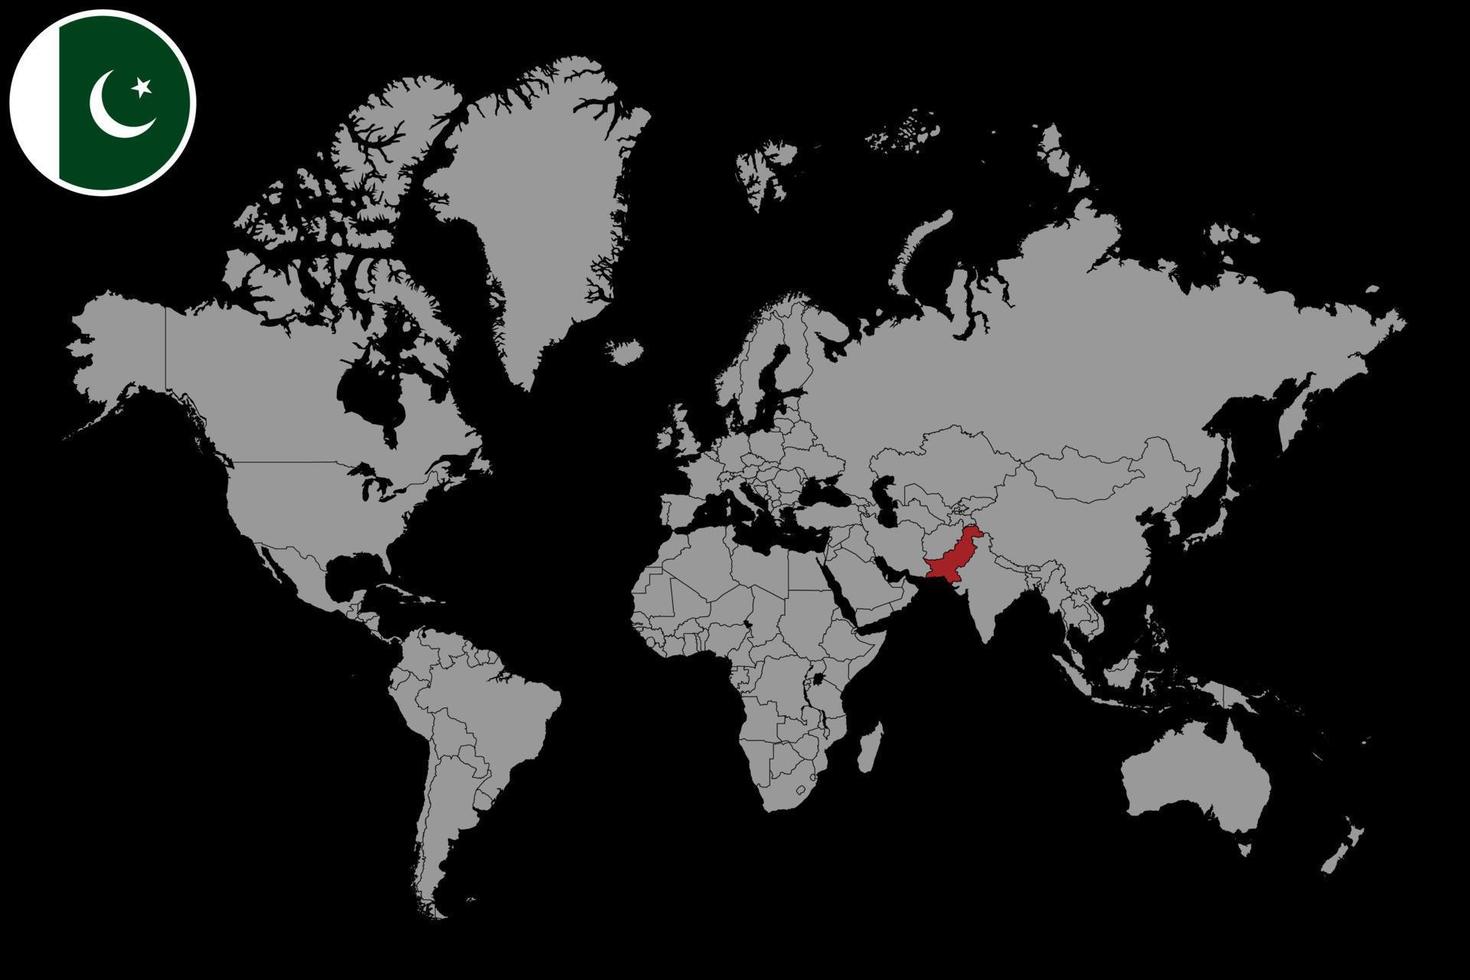 pin mapa con bandera de pakistán en el mapa mundial. ilustración vectorial vector